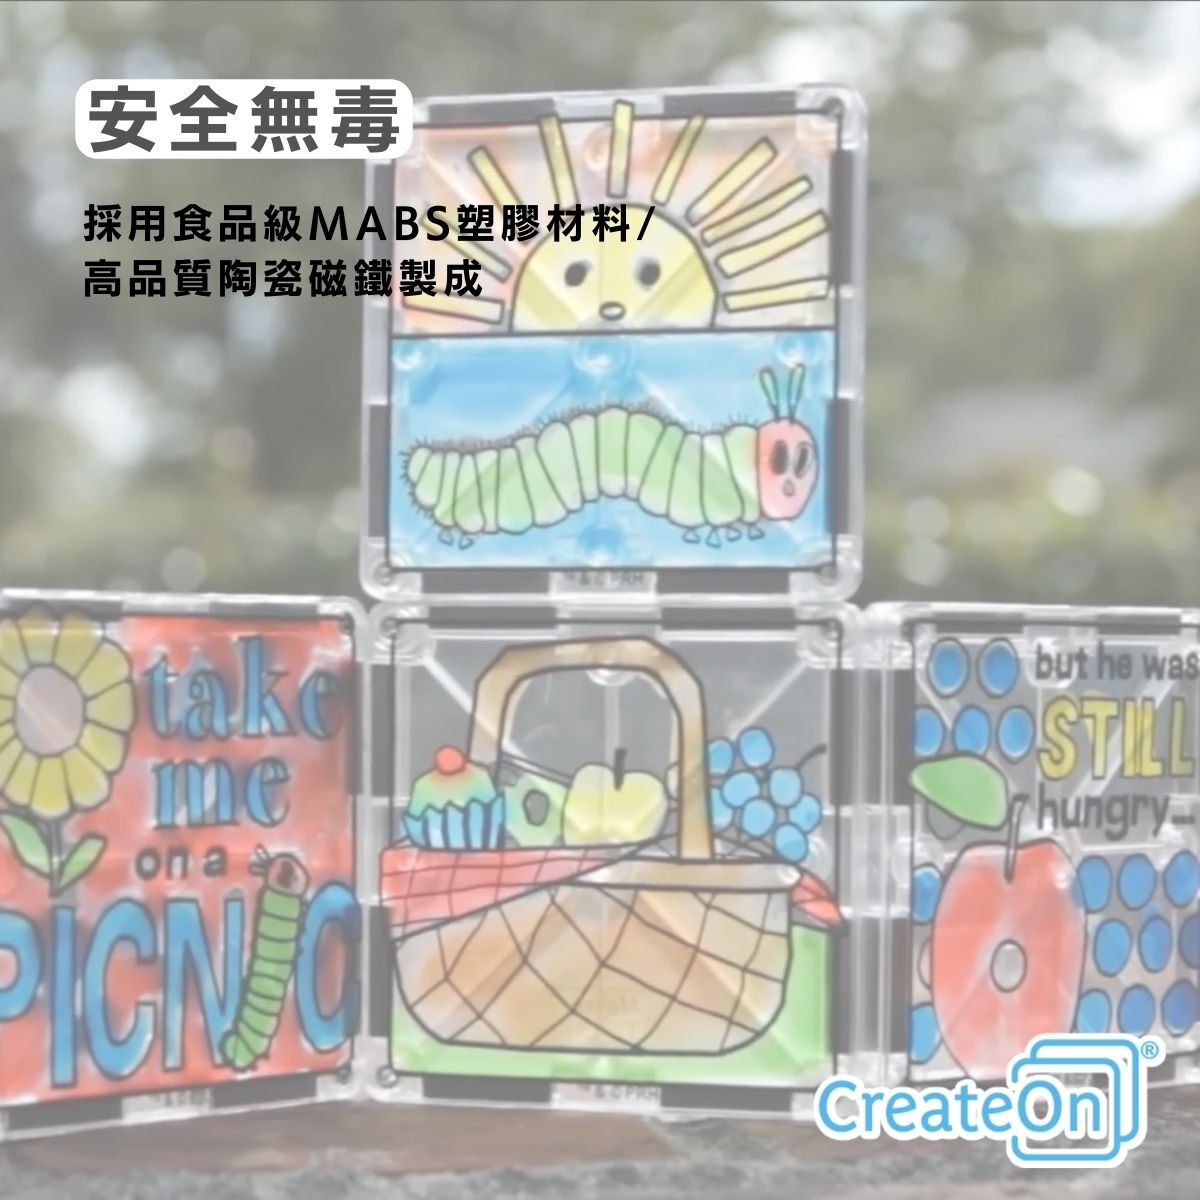 【美國CreateOn】彩繪磁力片積木-好餓好餓的毛毛蟲聯名款_產品說明 (7)